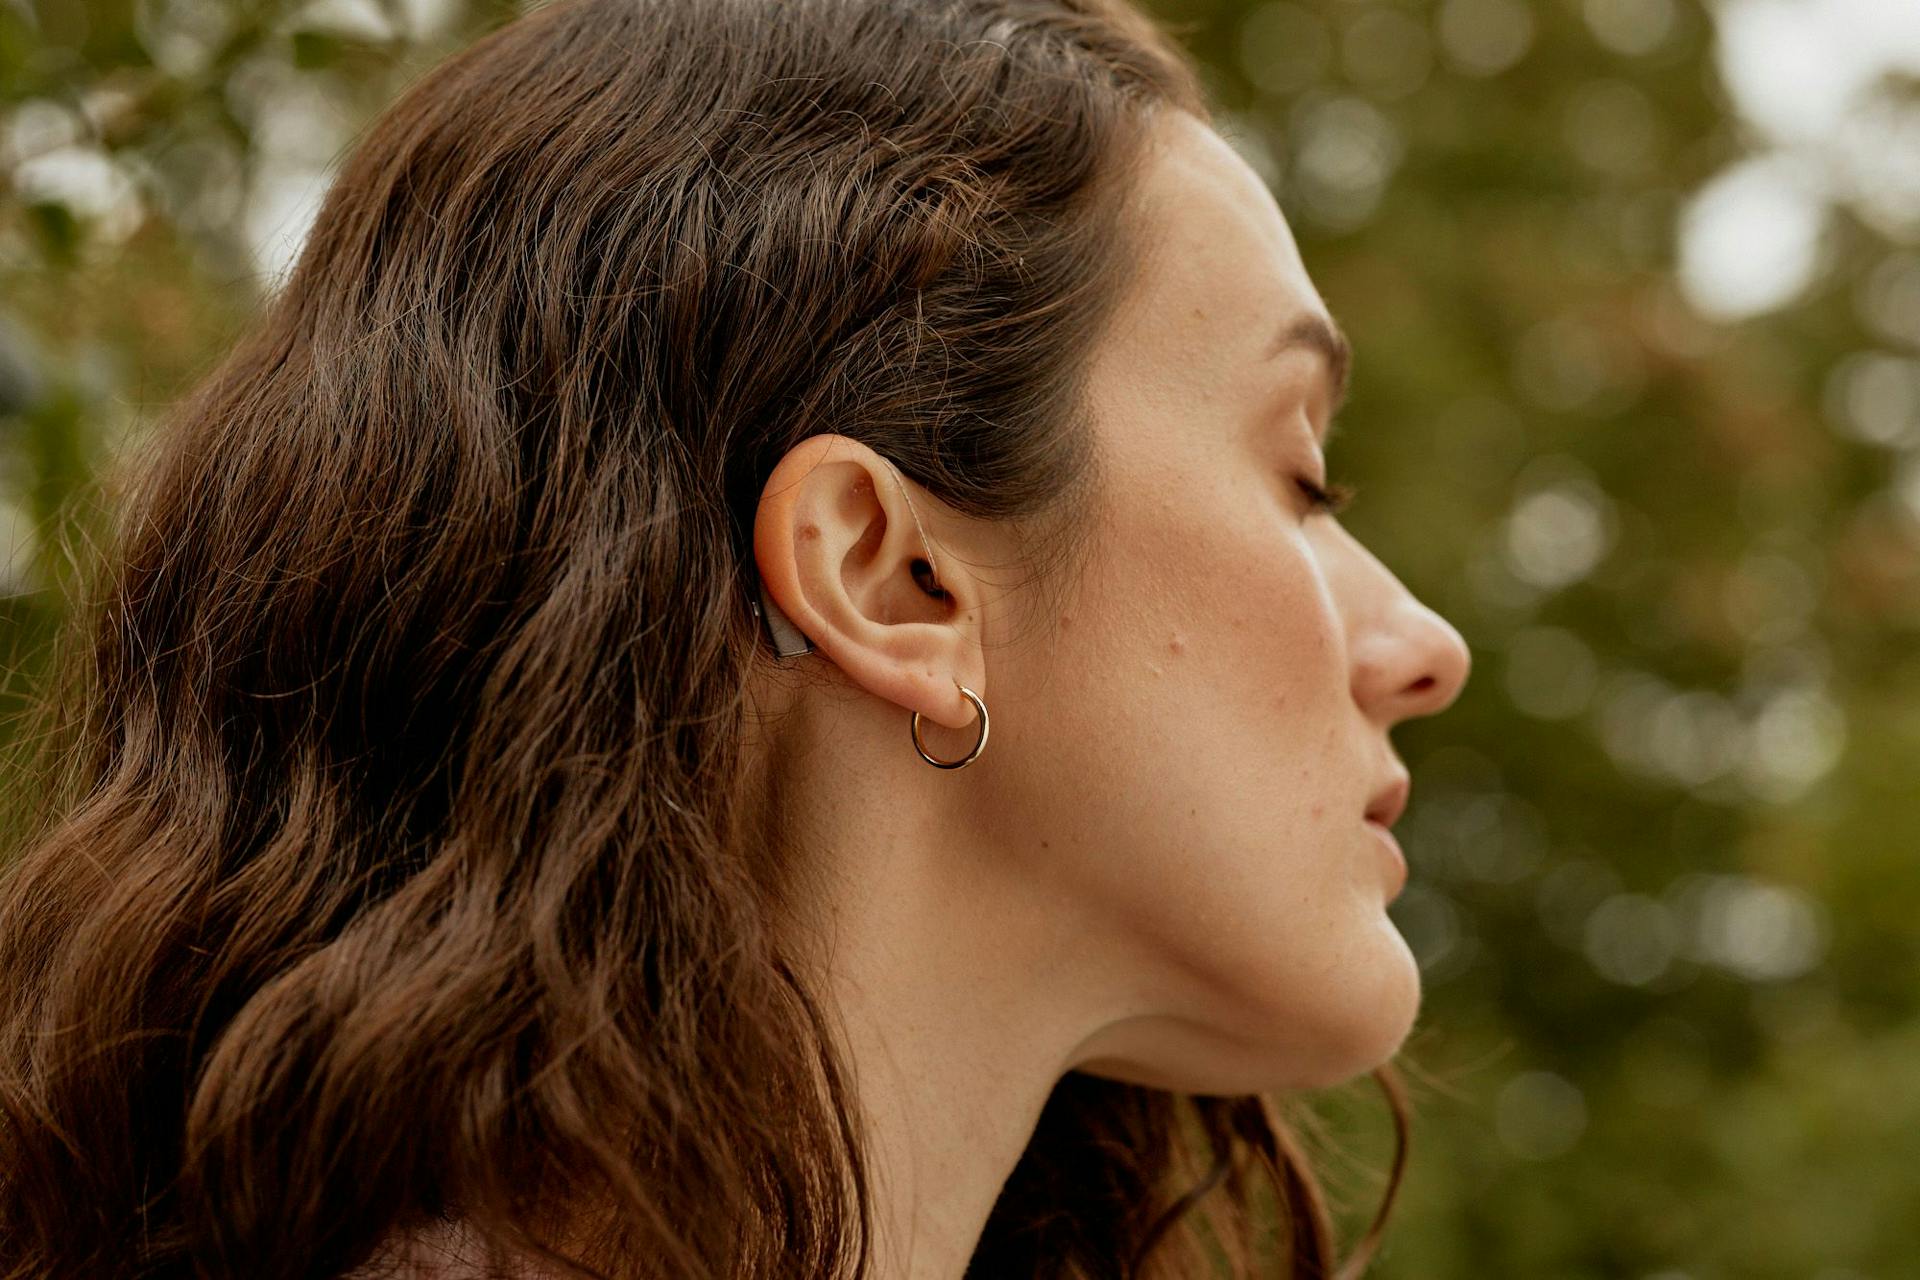 Mørkhåret kvinne i profil, med gullring i øret og synlig høreapparat